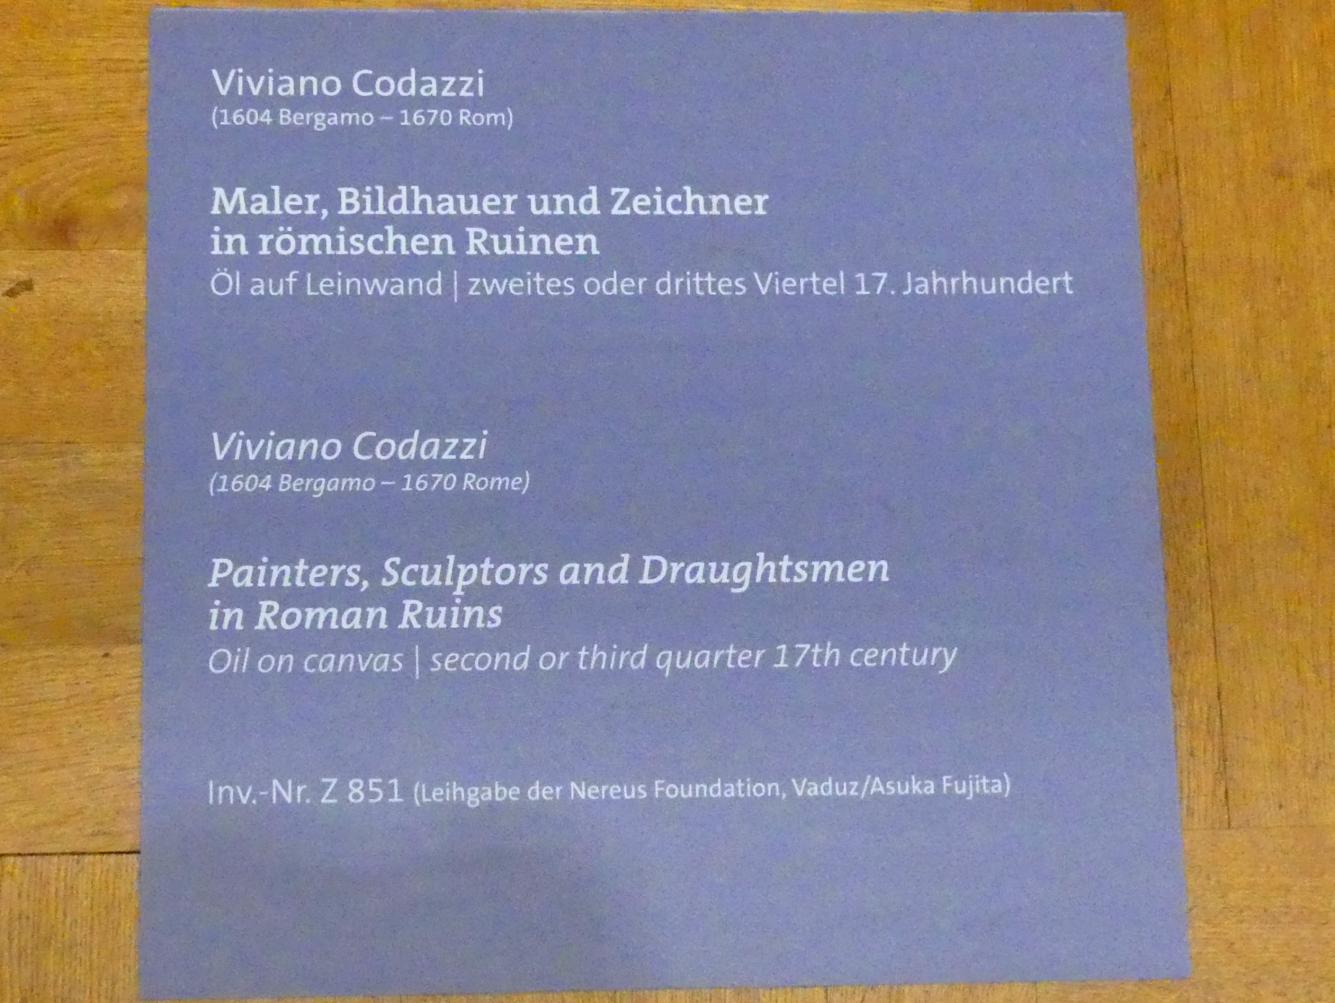 Viviano Codazzi (1647), Maler, Bildhauer und Zeichner in römischen Ruinen, Würzburg, Martin von Wagner-Museum, Saal 2, um 1625–1670, Bild 2/2